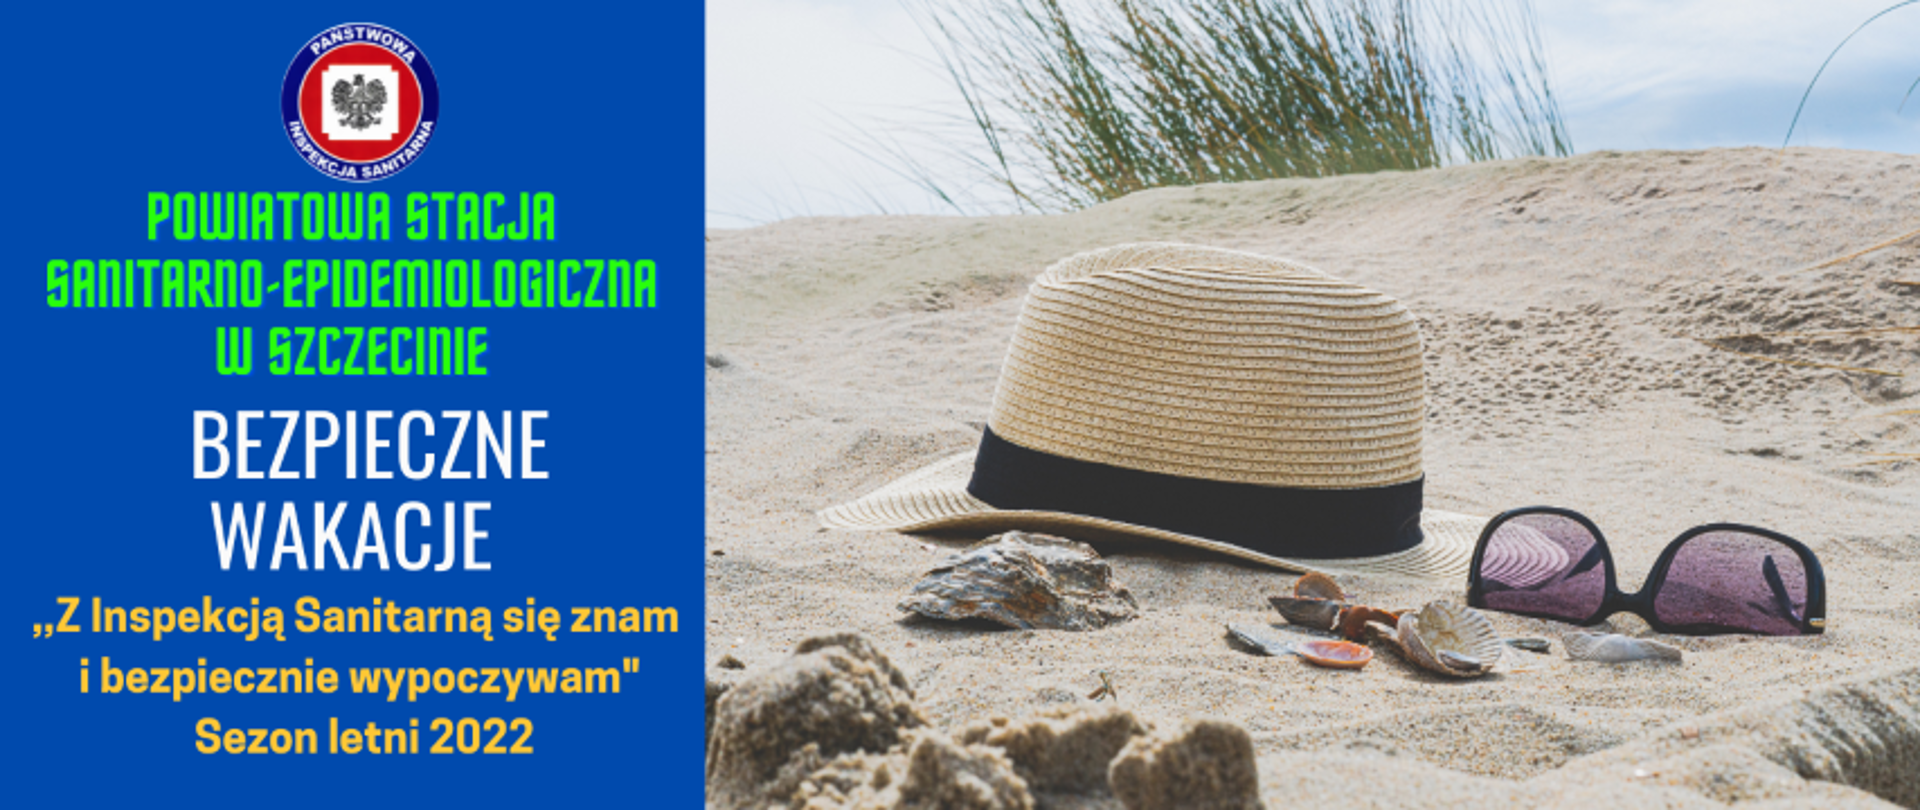 2022 Bezpieczne Wakacje z Inspekcją Sanitarną - kapelusz i okulary na plaży